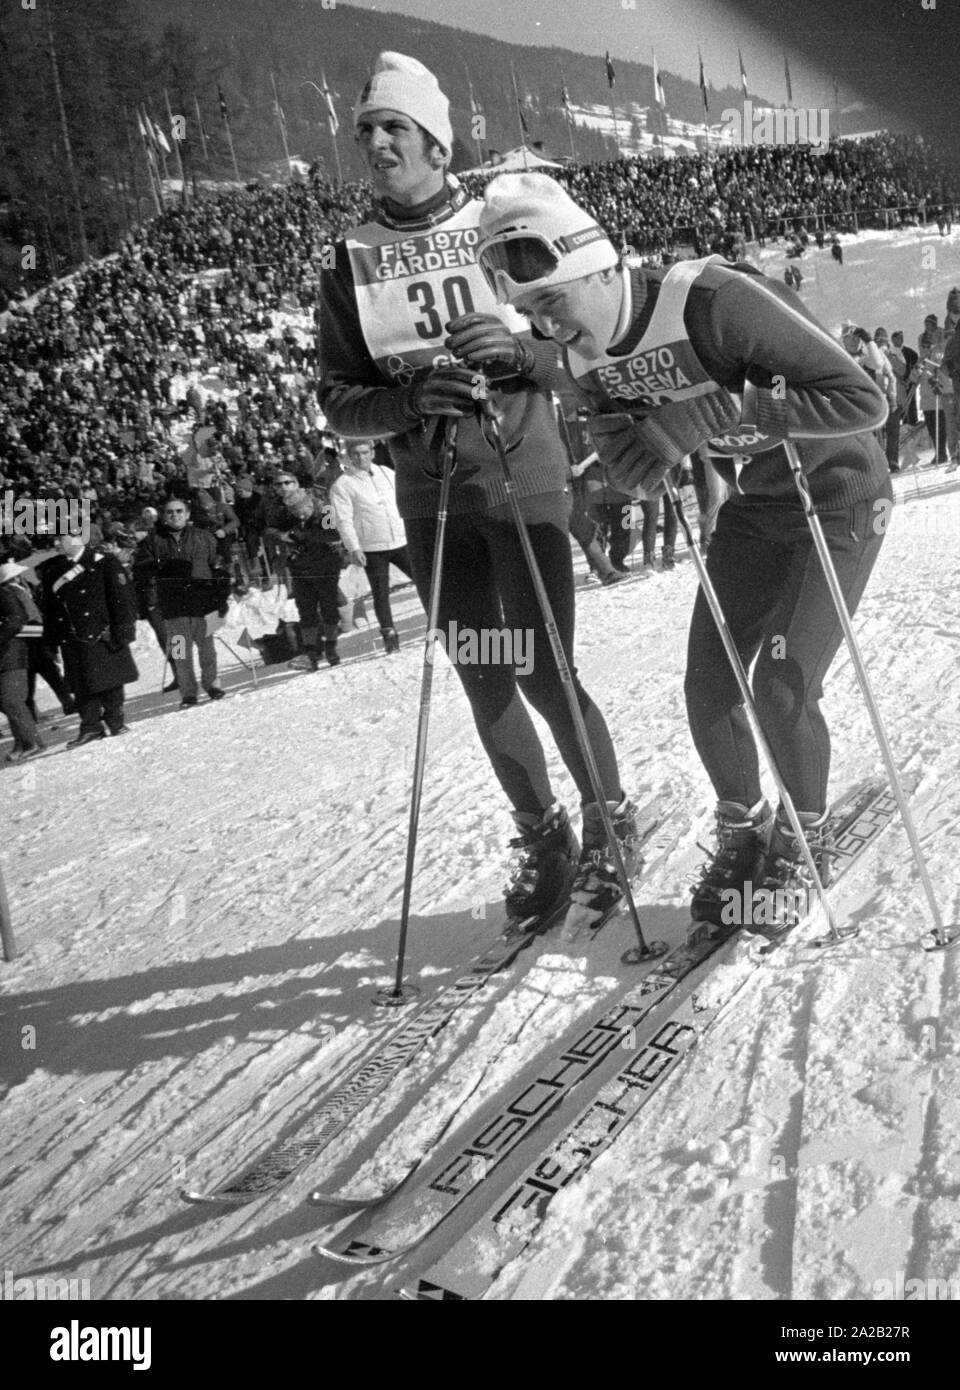 Die Alpine Ski-WM in Val Gardena zwischen 7.2.1970 und 15.2.1970, und er hatte die nur Wm so weit, deren Ergebnisse die Alpine Ski WM enthalten. Zwei Skifahrer schauen Sie oben an der Piste nach ihren Lauf in einem der Wettbewerbe. Stockfoto